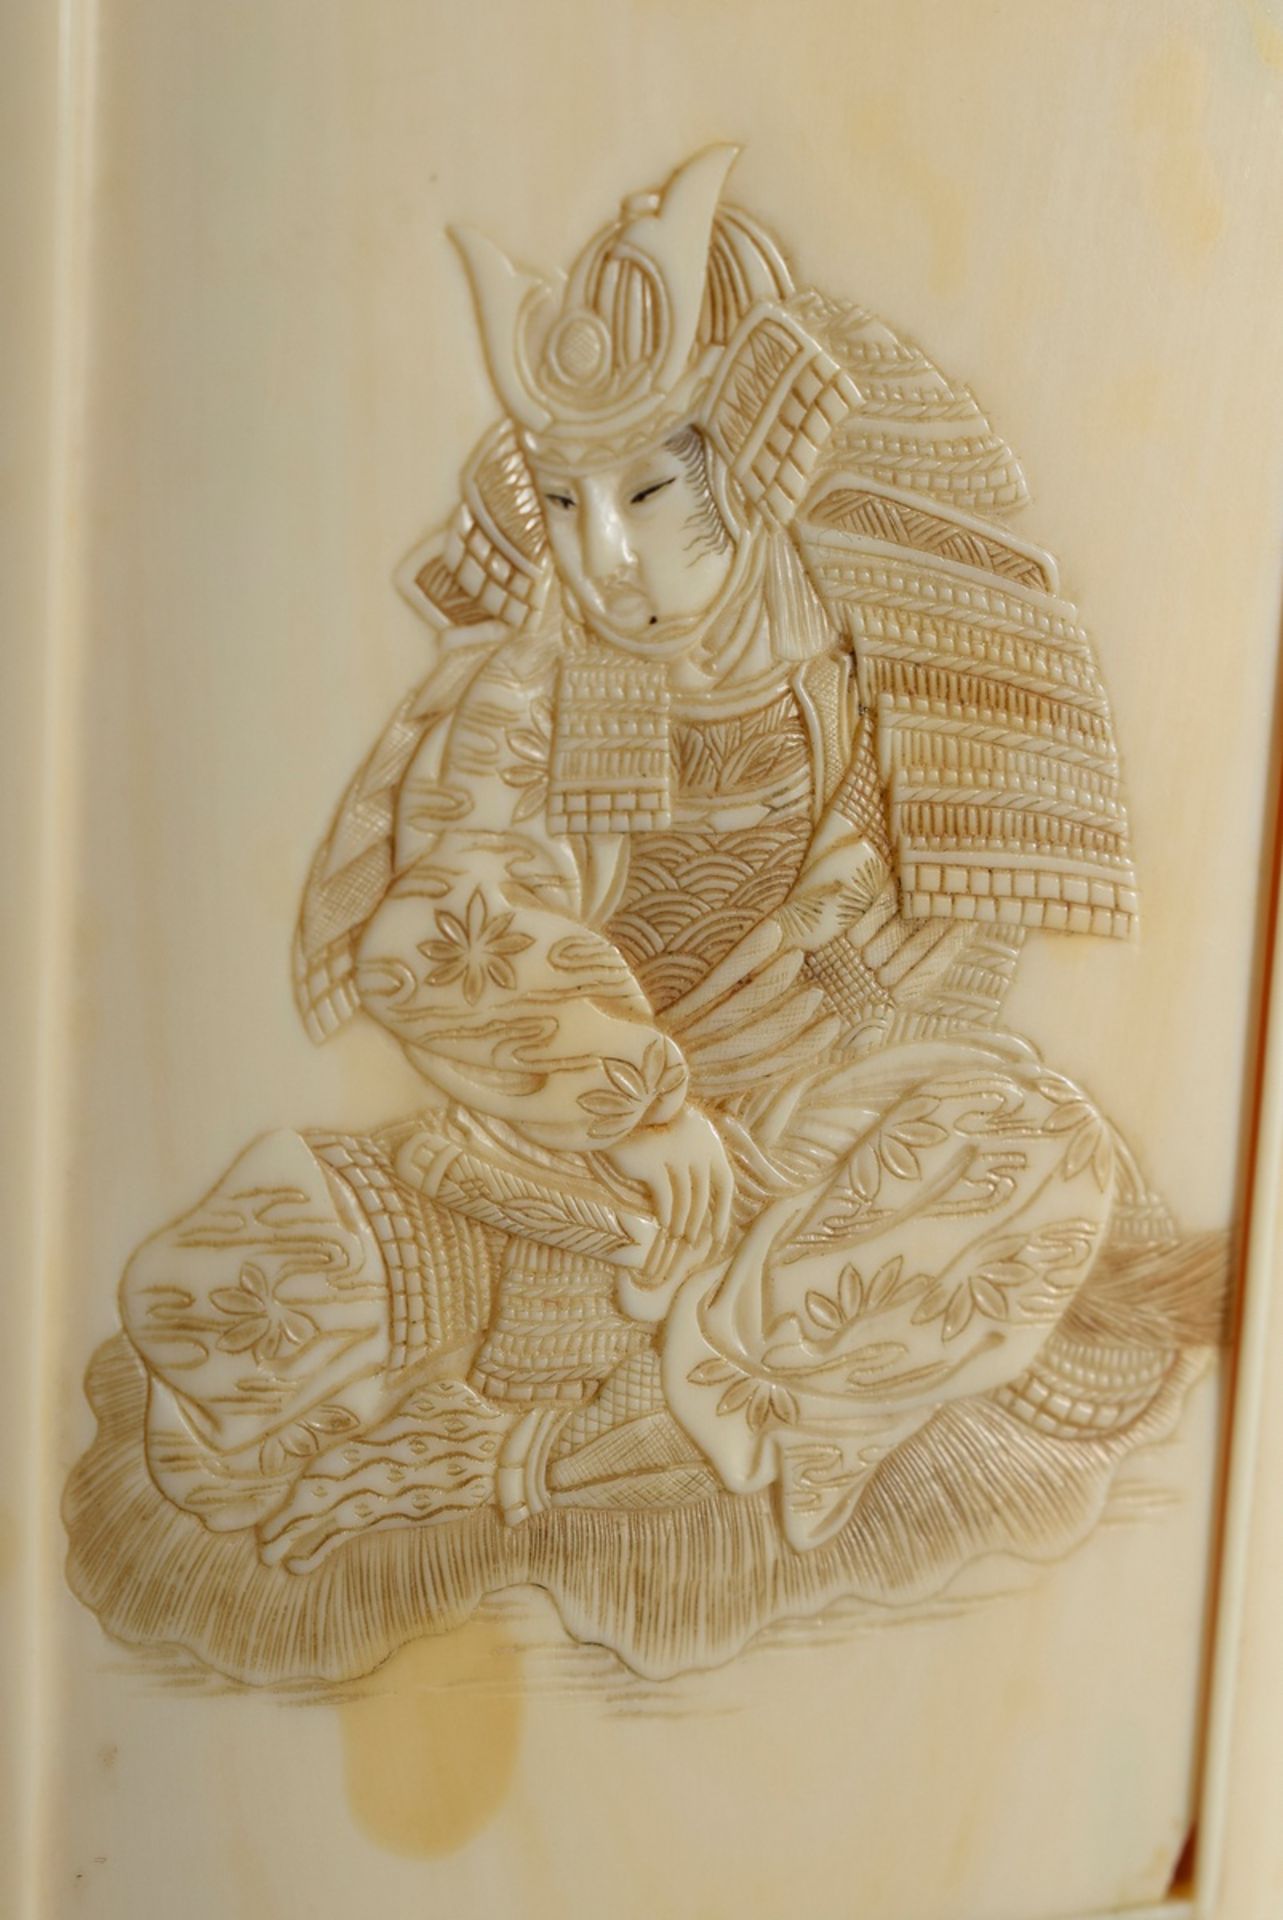 Japanische Elfenbein Schnupftabakdose mit Relief Schnitzereien "Samurai" sowie - Bild 4 aus 6